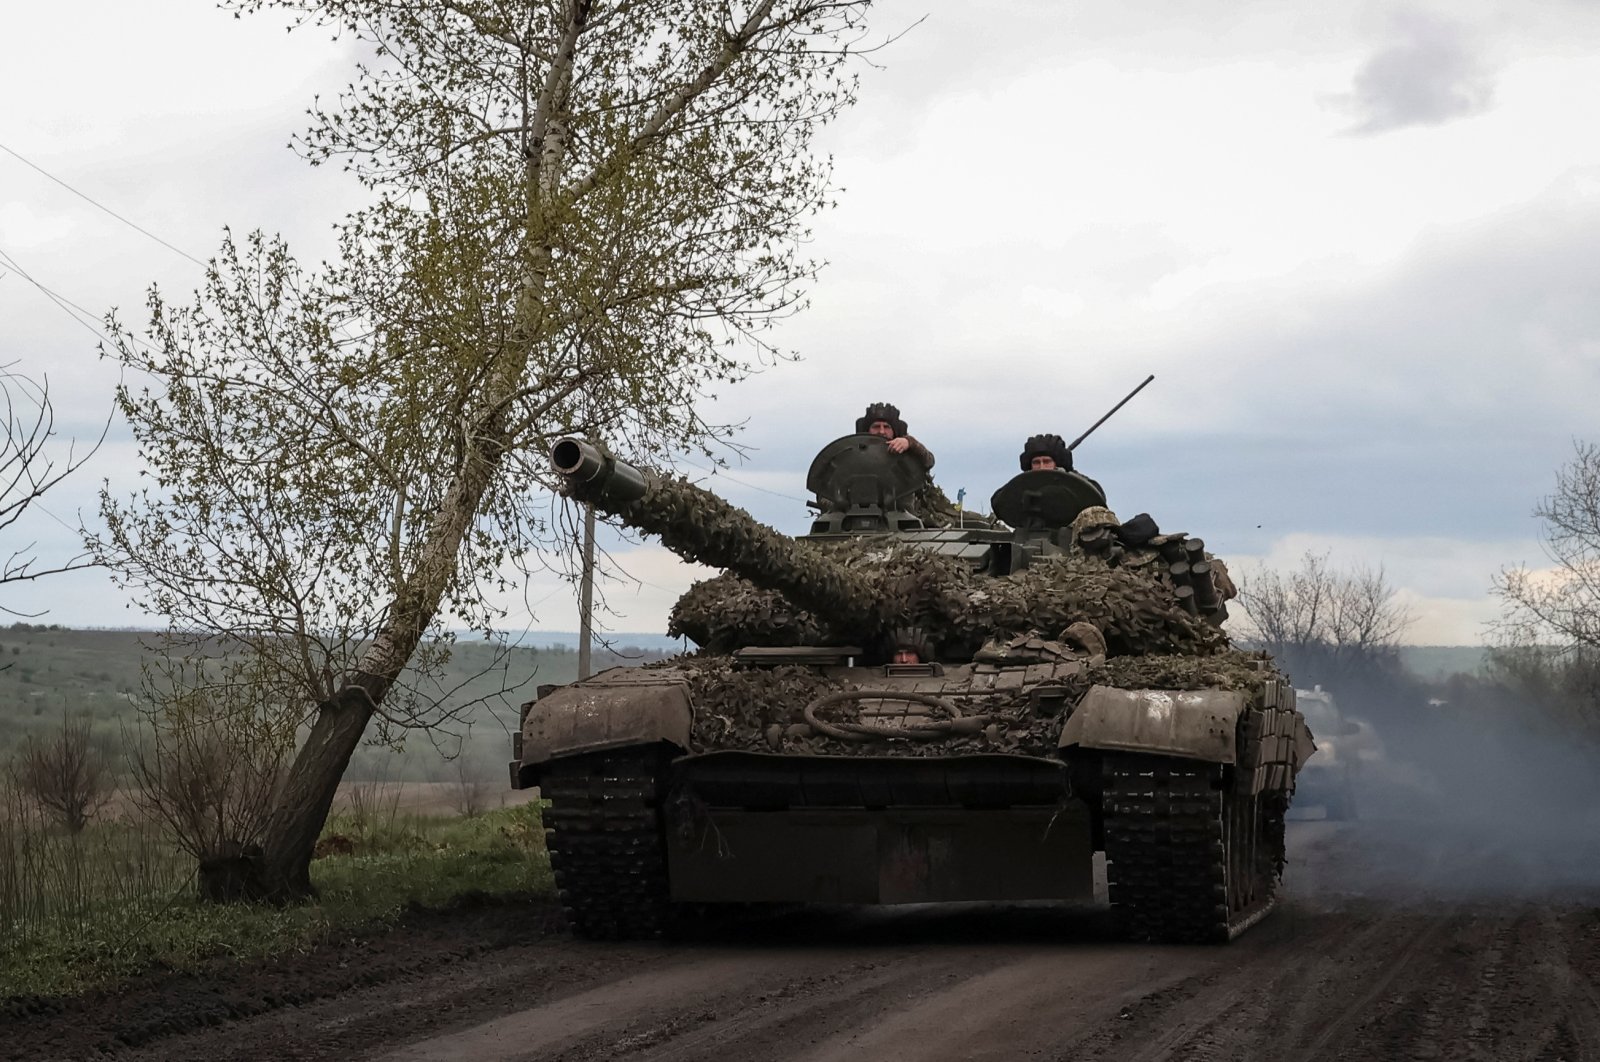 Ukraine now has military capability to recapture territory: NATO